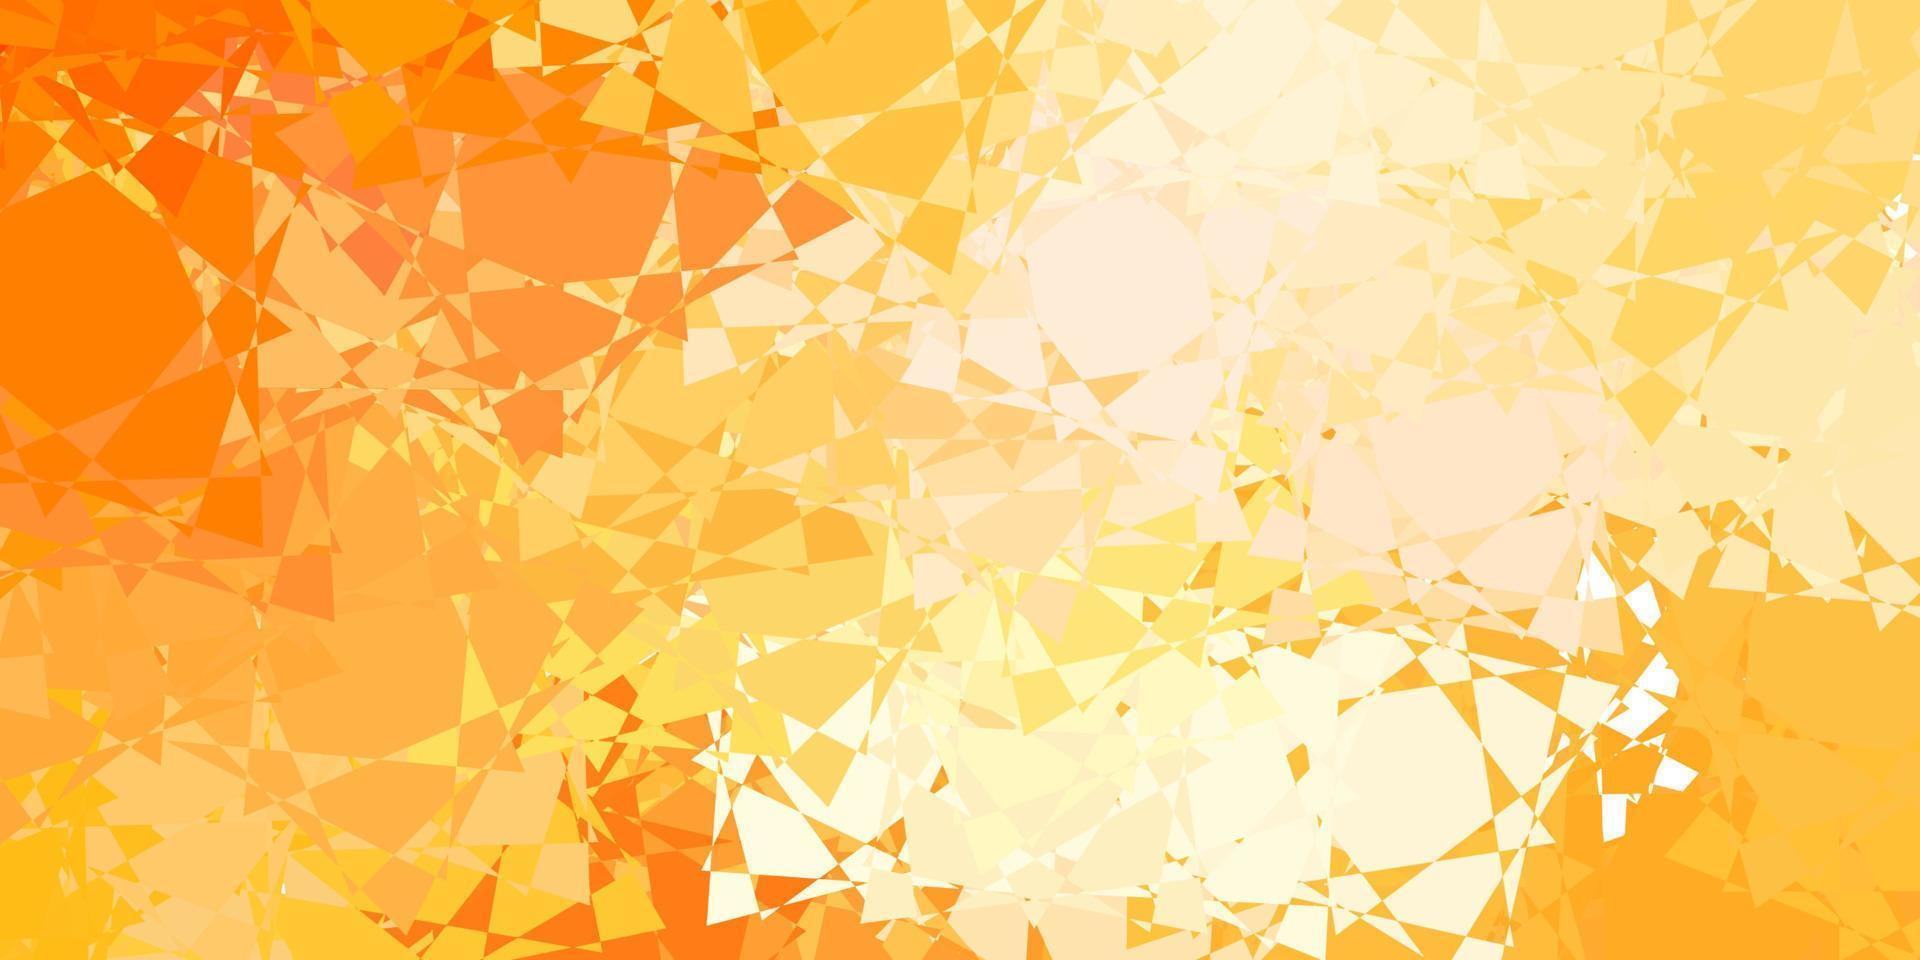 ljus orange vektor bakgrund med polygonala former.